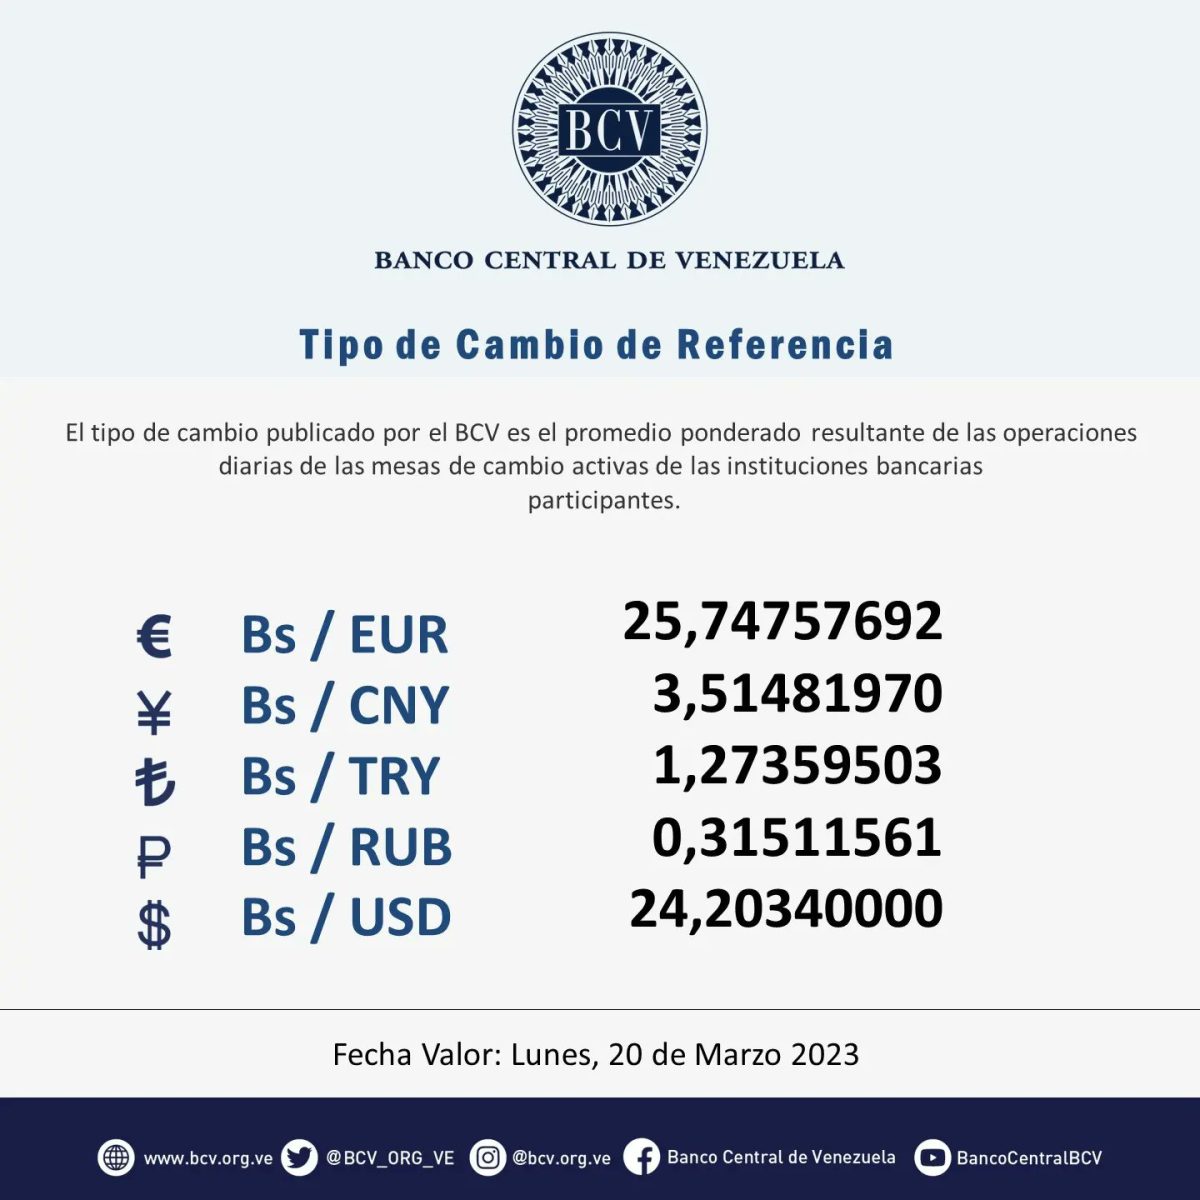 dolartoday en venezuela precio del dolar este sabado 18 de marzo de 2023 laverdaddemonagas.com bcv5